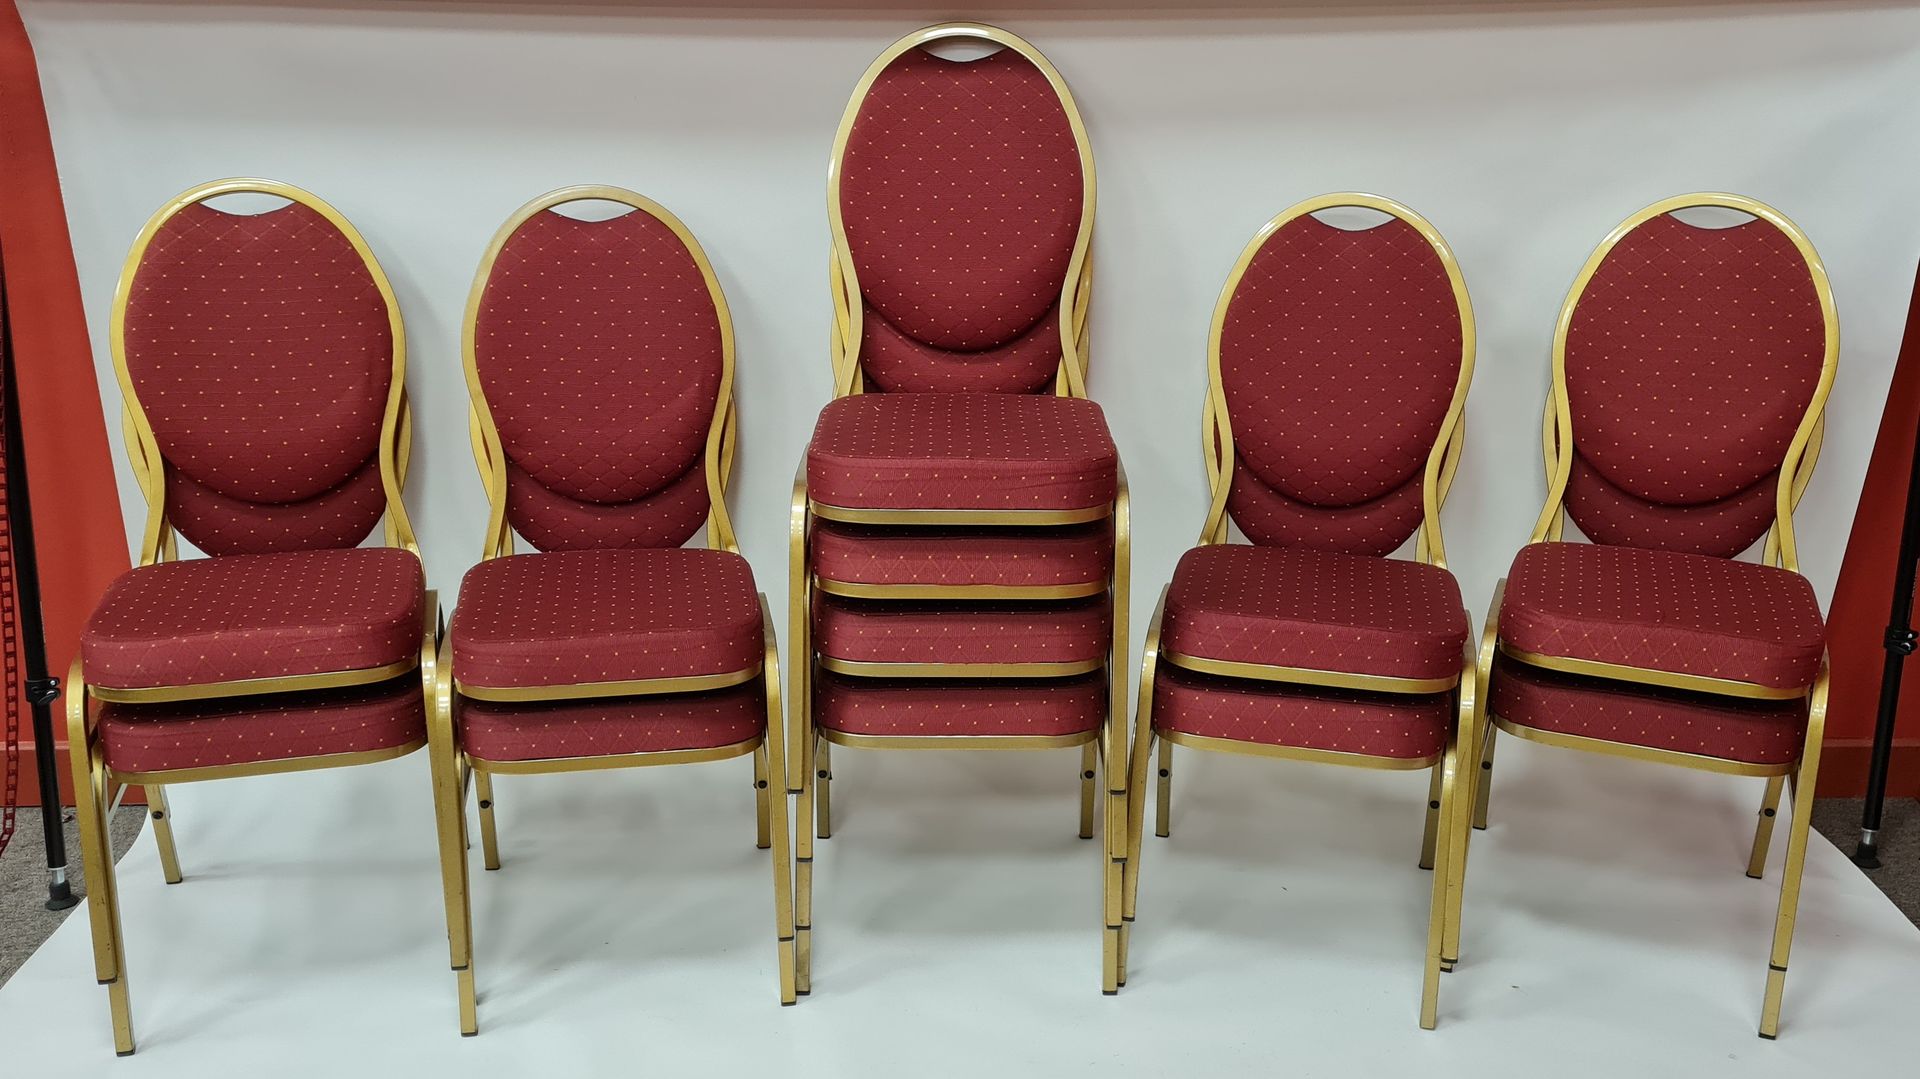 Null lote 20 sillas apilables con asientos de tela roja y patas de metal